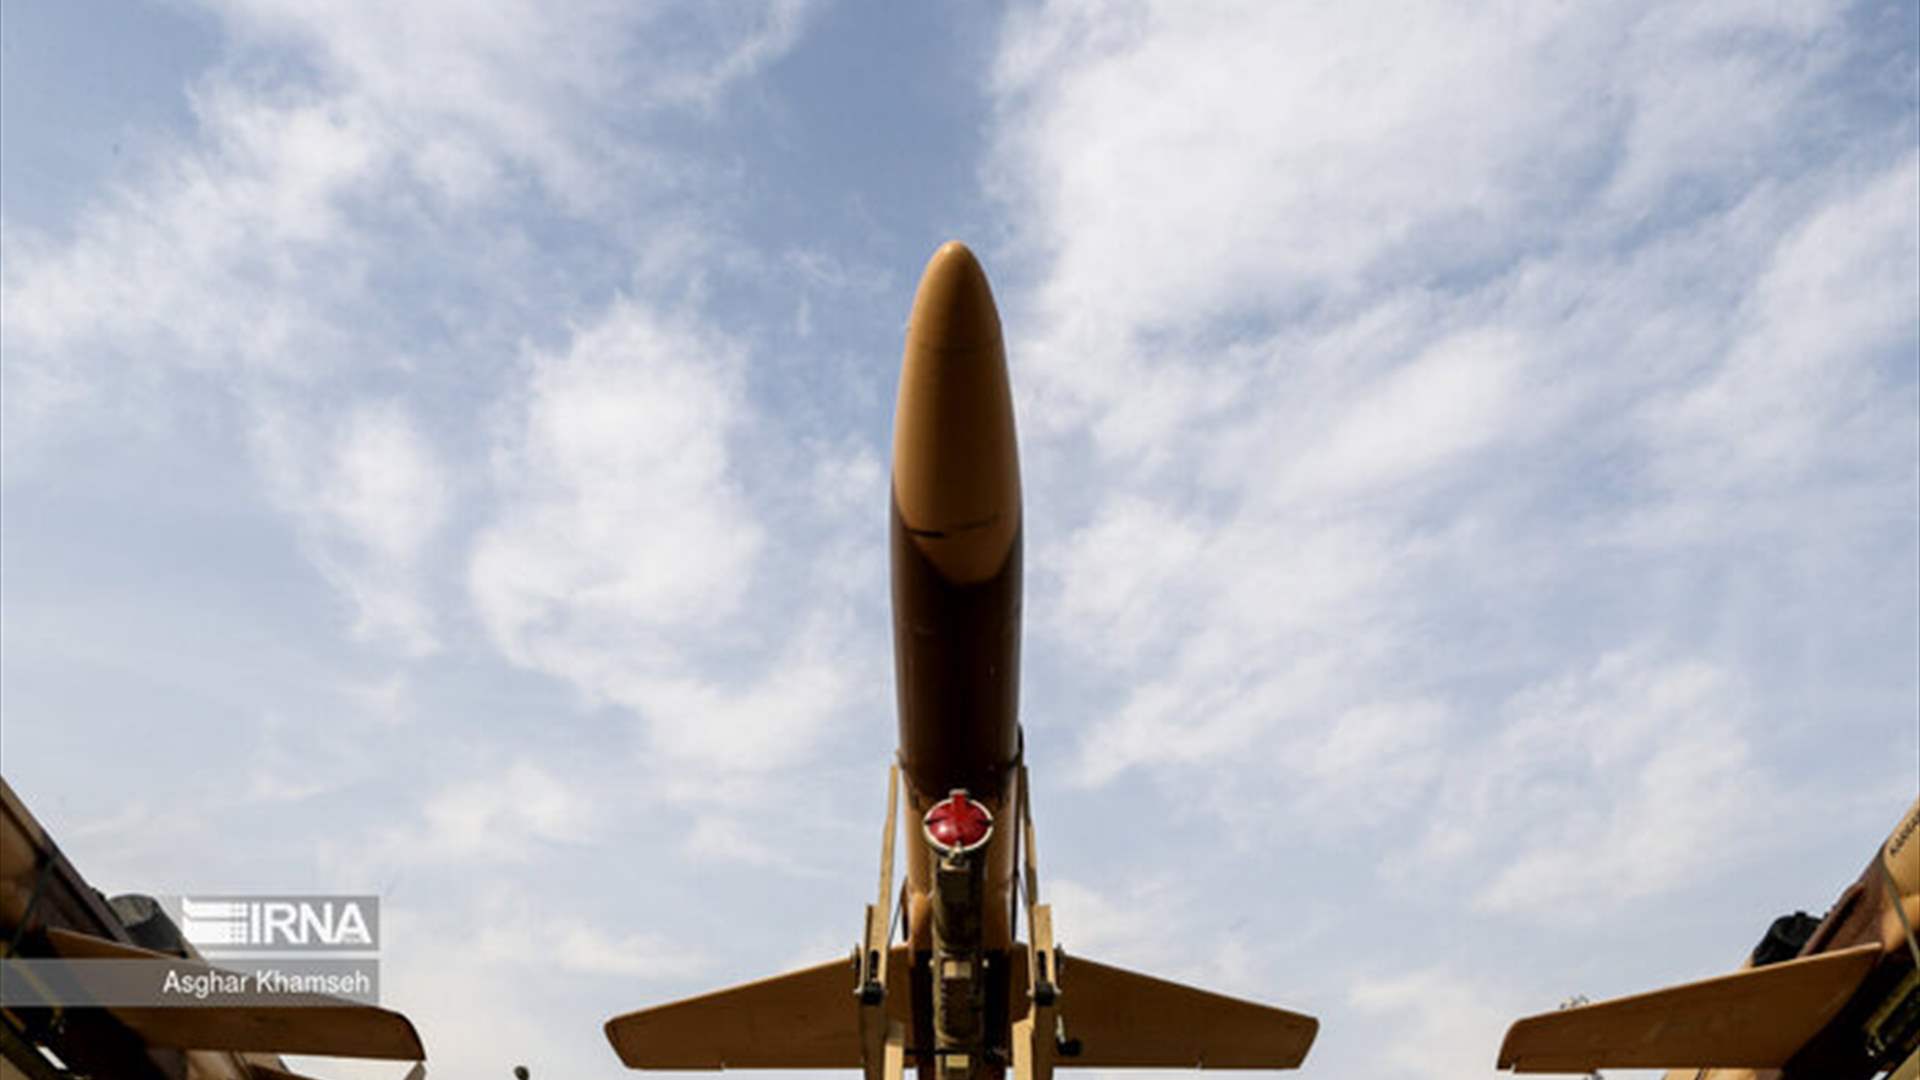 إيران تعلن انضمام مسيّرات مزودة بصواريخ إلى دفاعاتها الجوية